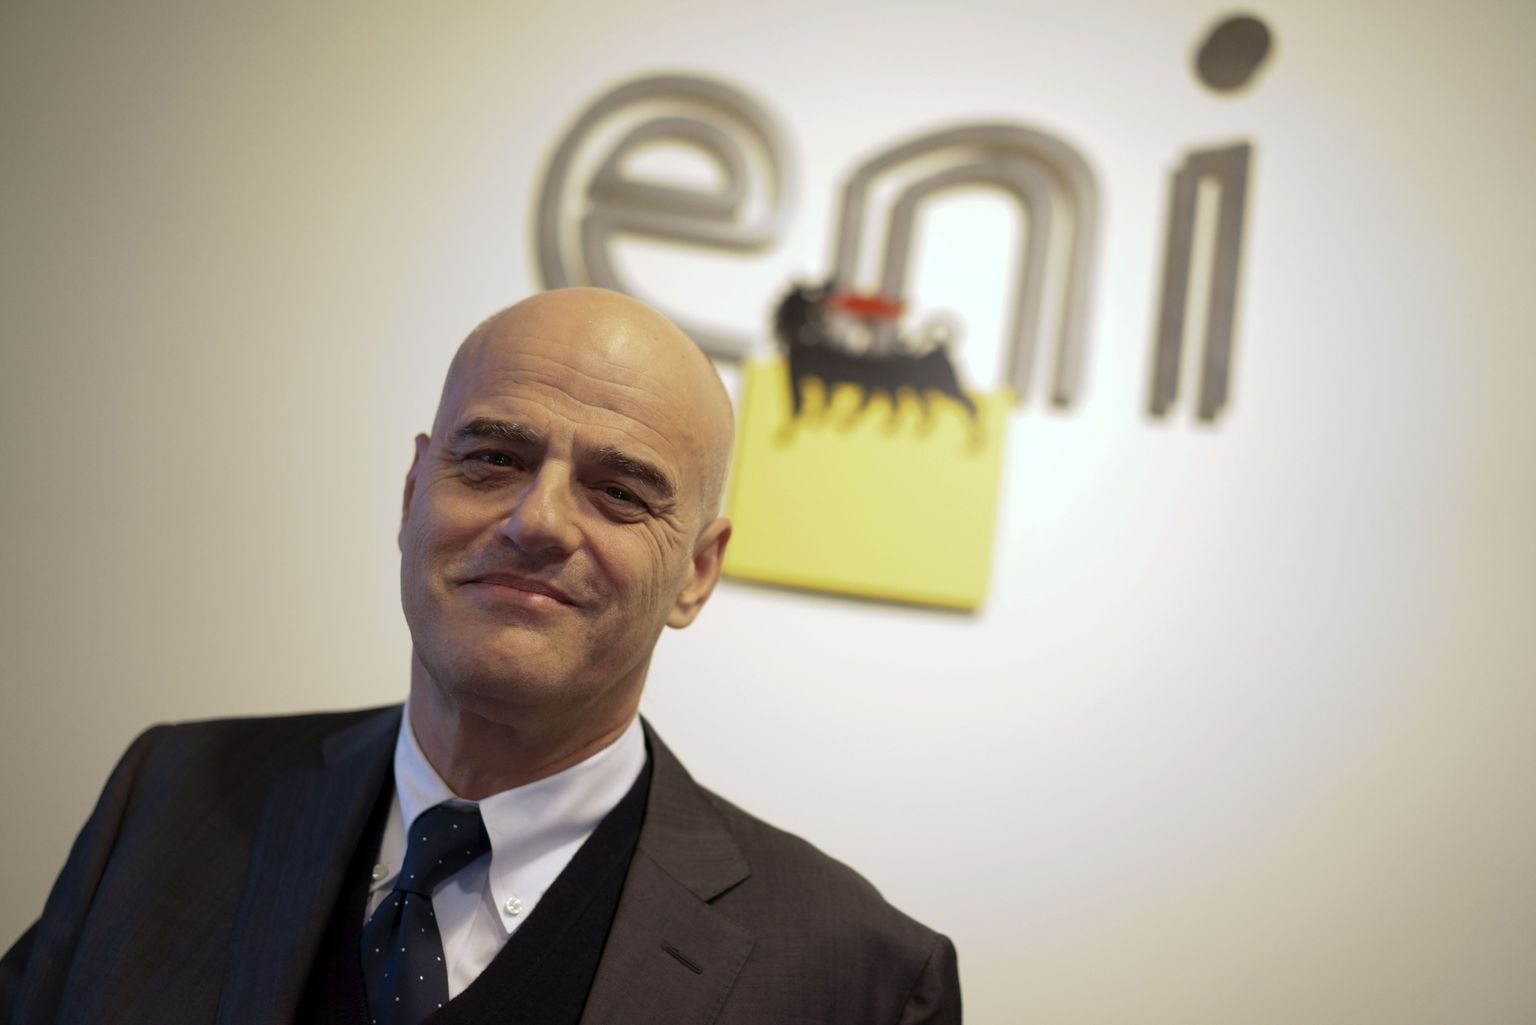 Itaalia energiaettevõtte Eni tegevjuht Claudio Descalzi.